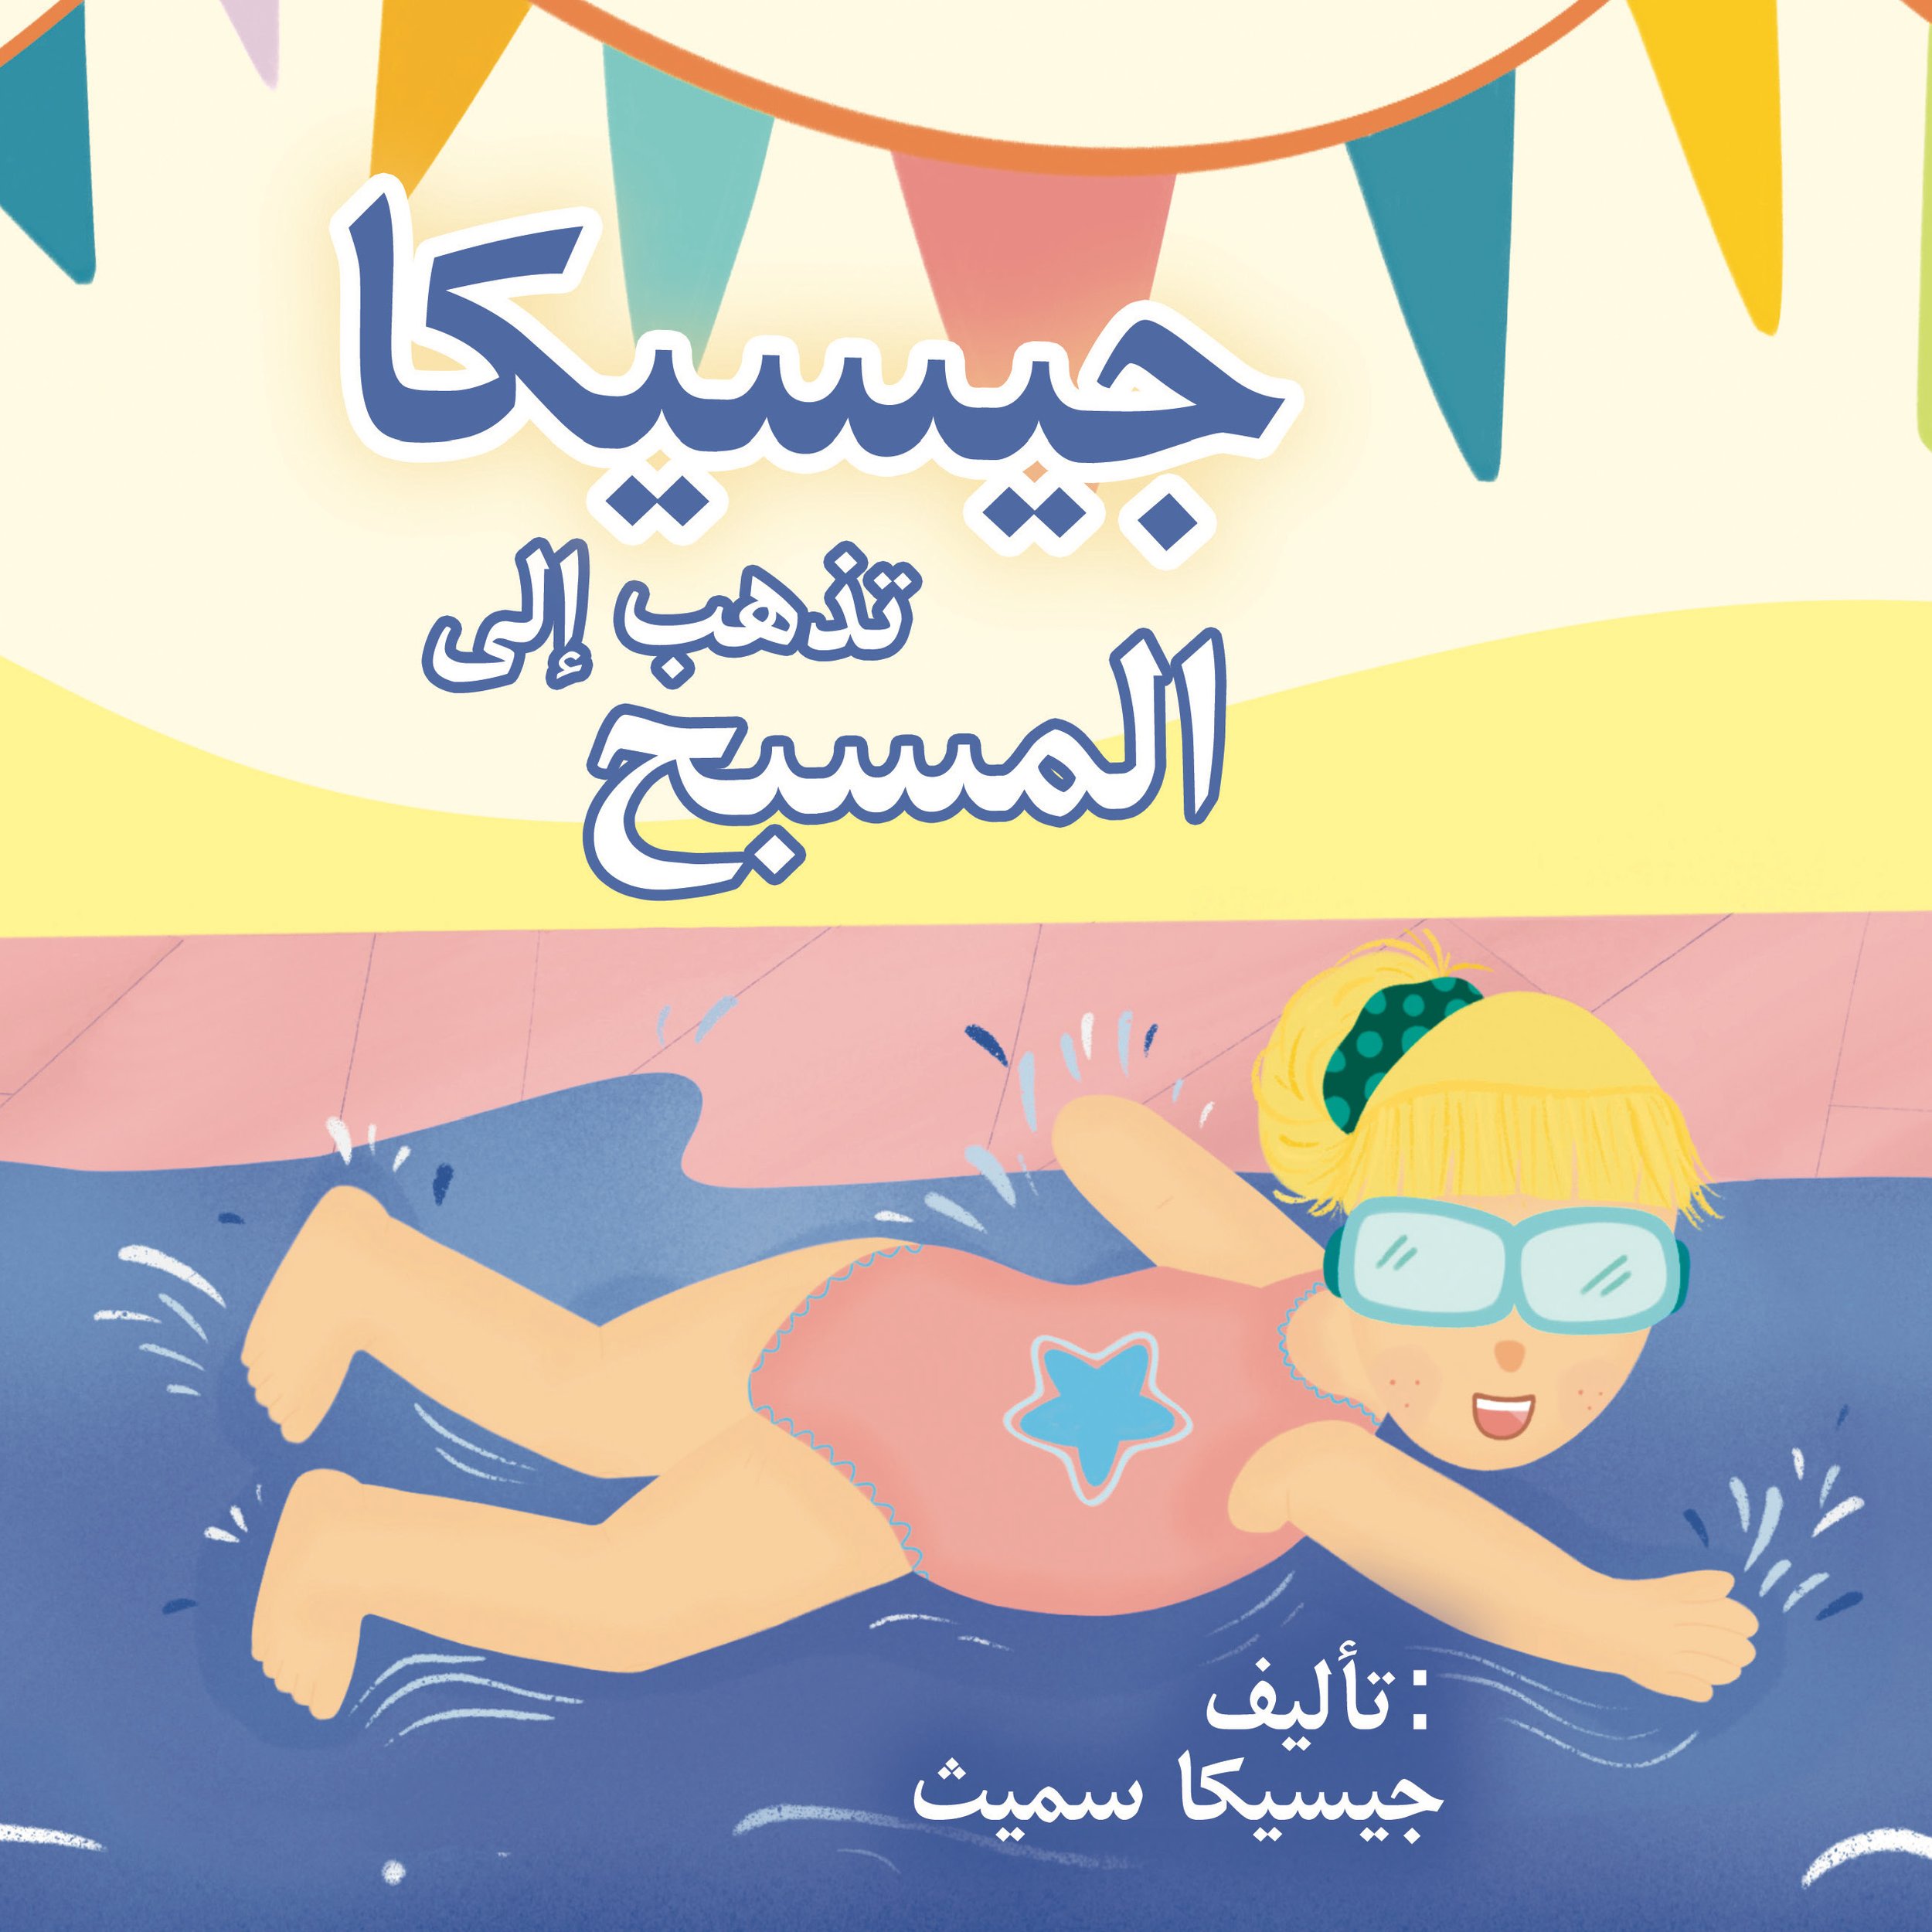 jessica goes swimming Arabic cover final.jpg